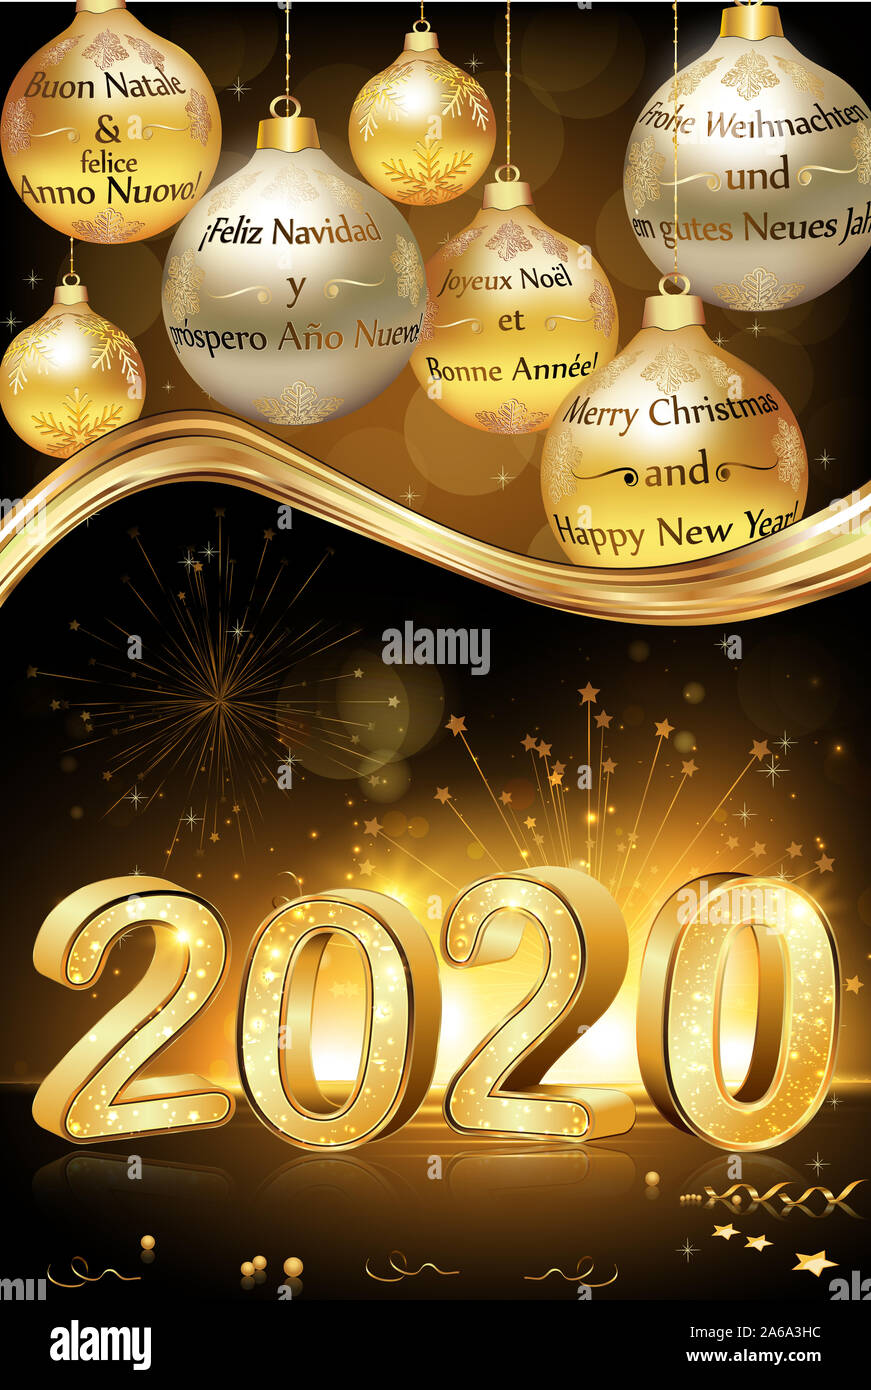 Frohe Weihnachten und guten Rutsch ins Neue Jahr 2020 in vielen Sprachen  Deutsch, Englisch, Französisch, Spanisch, Deutsch, Italienisch und  Niederländisch Stockfotografie - Alamy